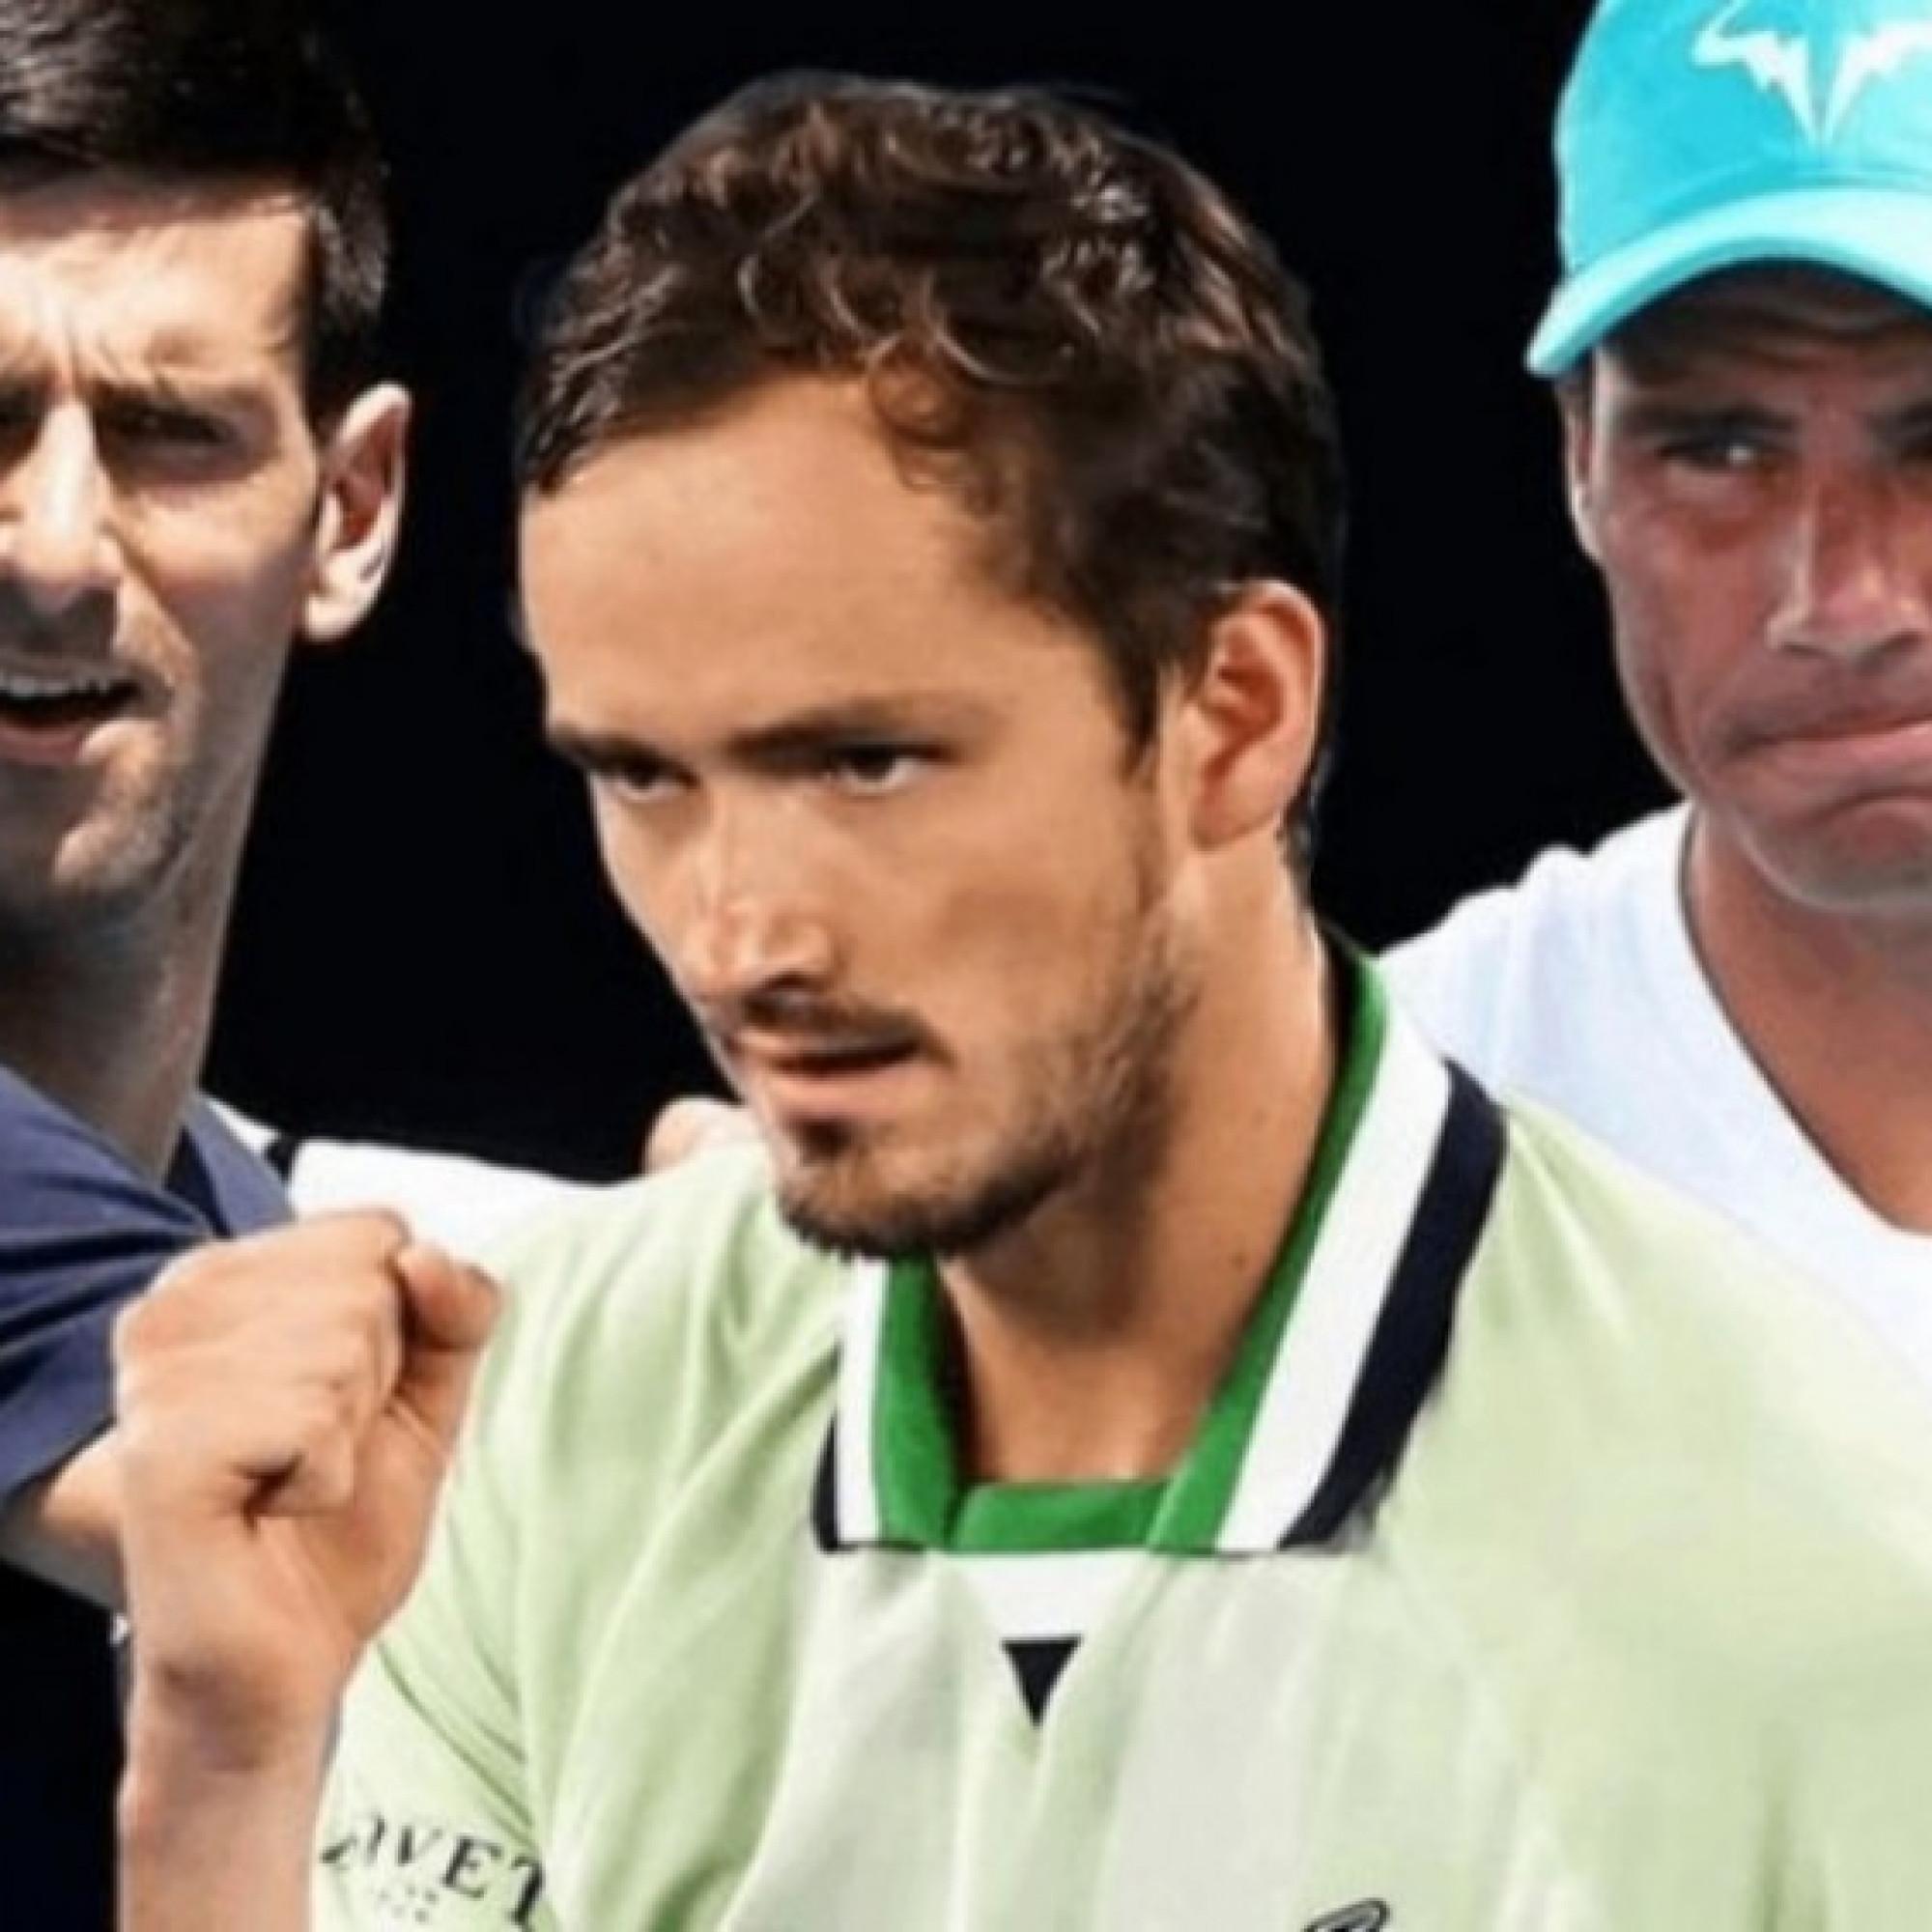  - Medvedev bình luận: "Không Djokovic thì Nadal sẽ còn hay hơn, và ngược lại"